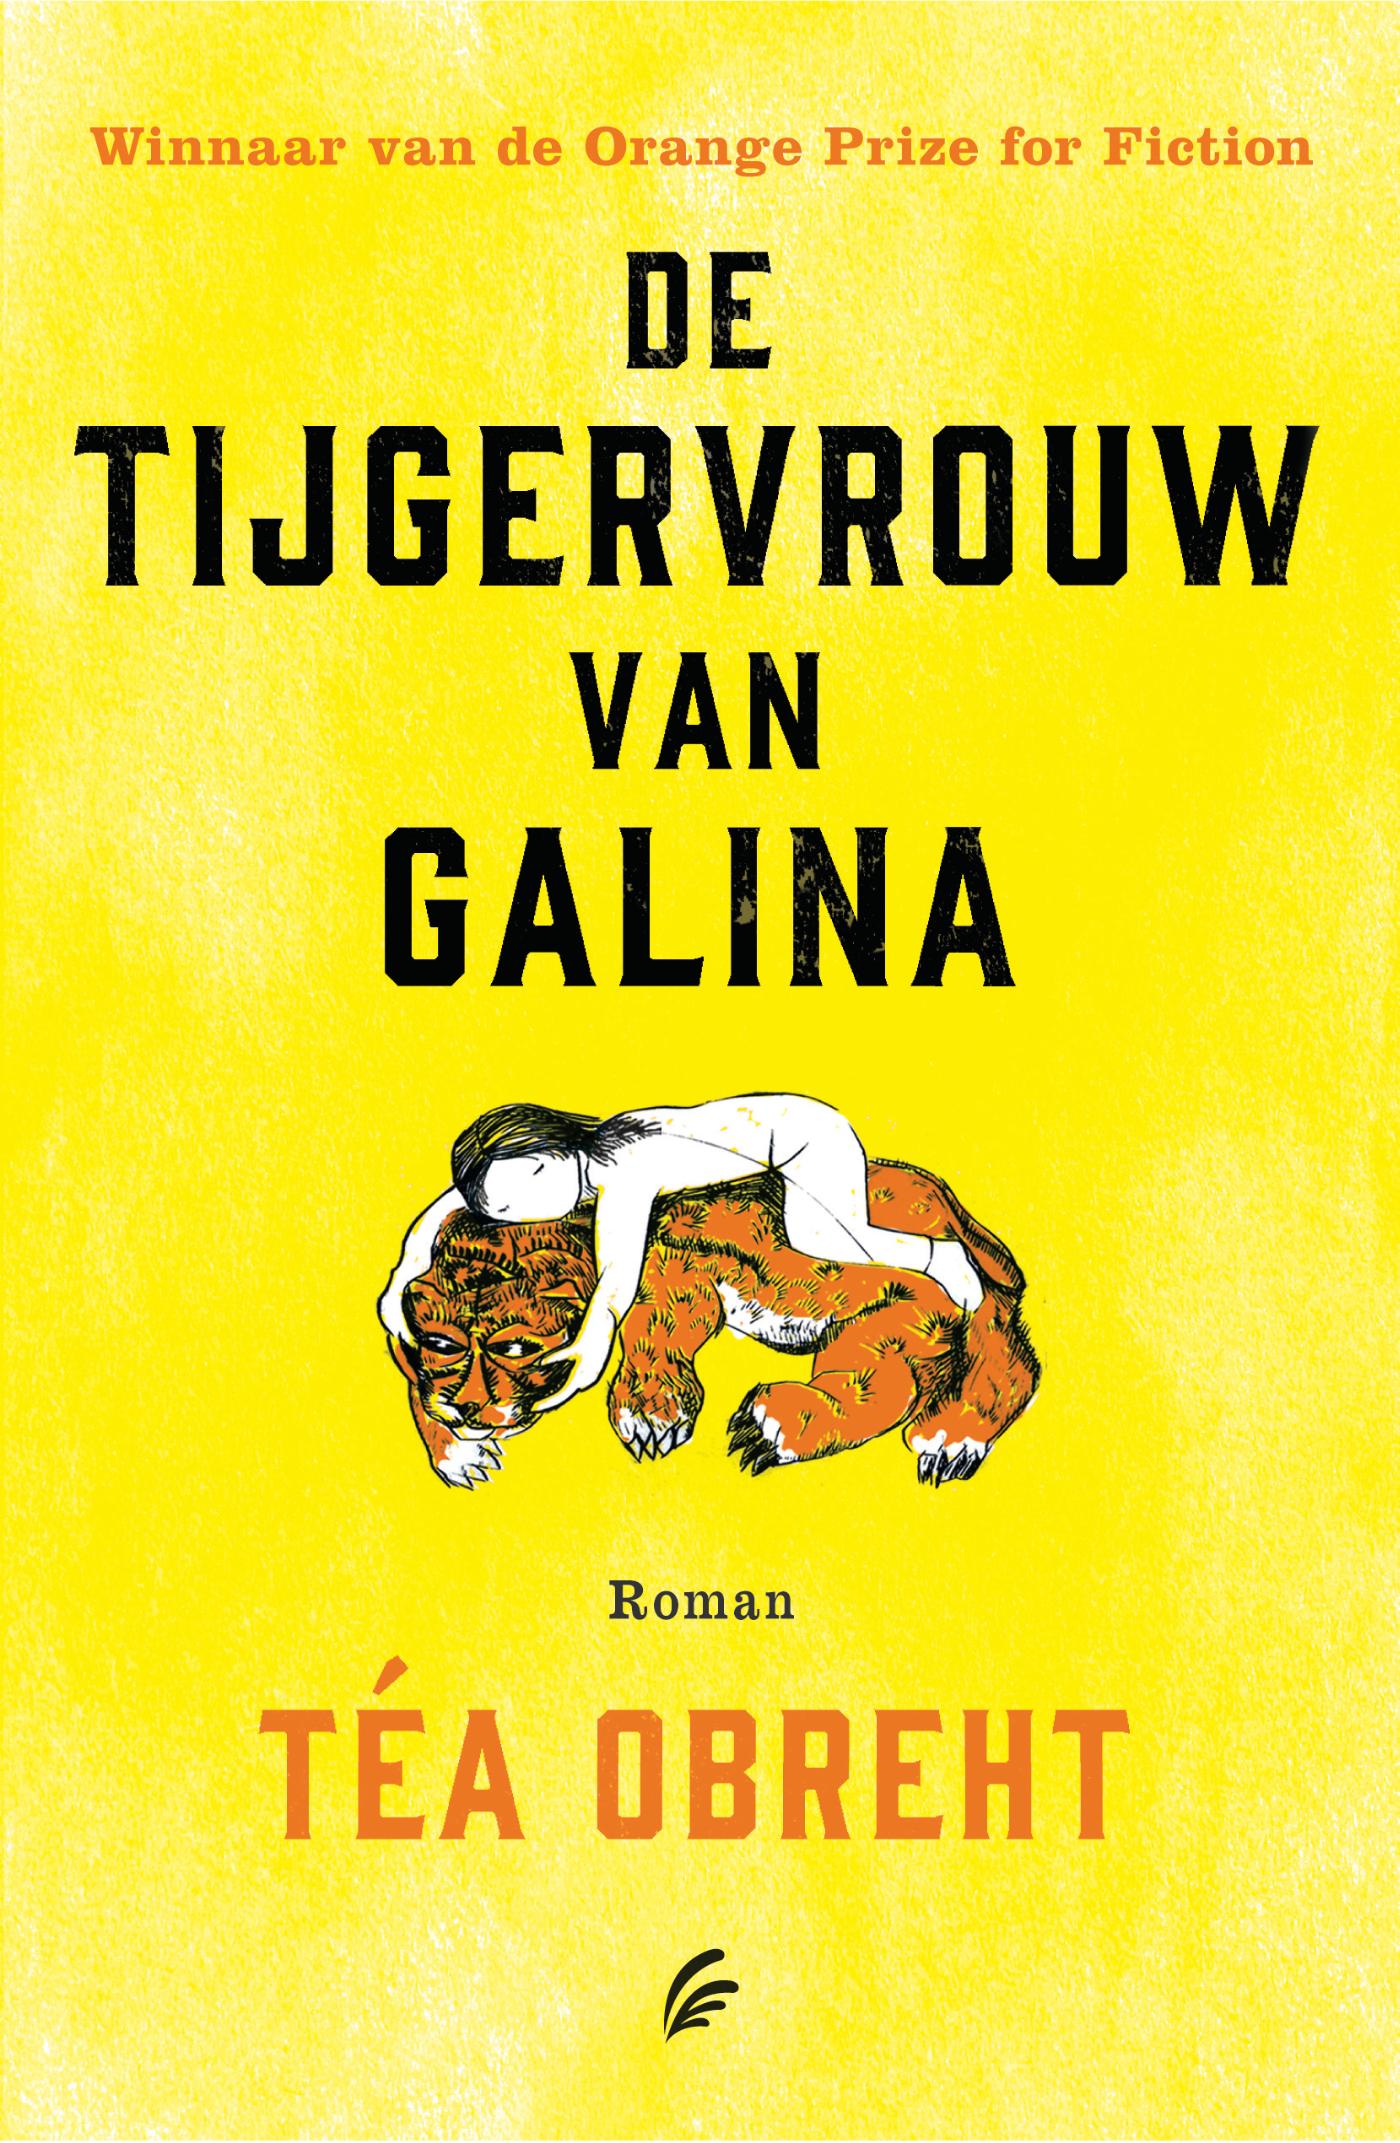 De tijgervrouw van Galina (Ebook)